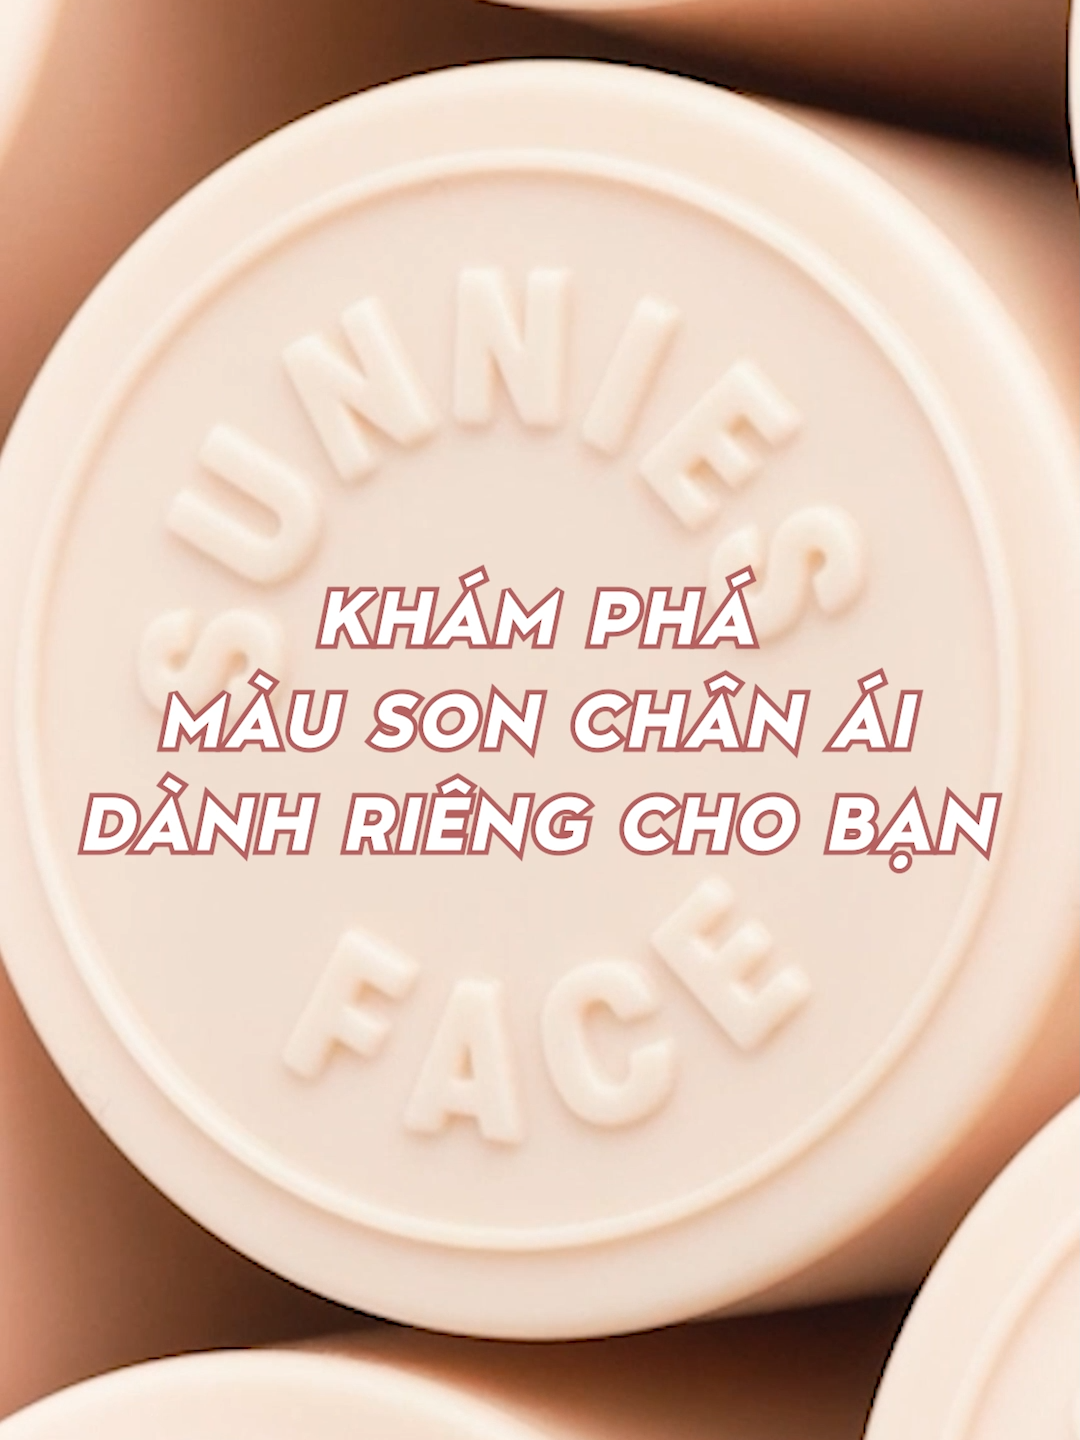 𝗦𝗨𝗡𝗡𝗜𝗘𝗦 𝗙𝗔𝗖𝗘 chính hãng. Son kem lỳ Fluffmatte - dòng son với bảng màu trendy và slay hơn trong mỗi bản make up. Mua ngay!  #acfc #acfcvietnam #acfconline #sunniesface #SunniesFaceVietnam #beautythatgetsyou